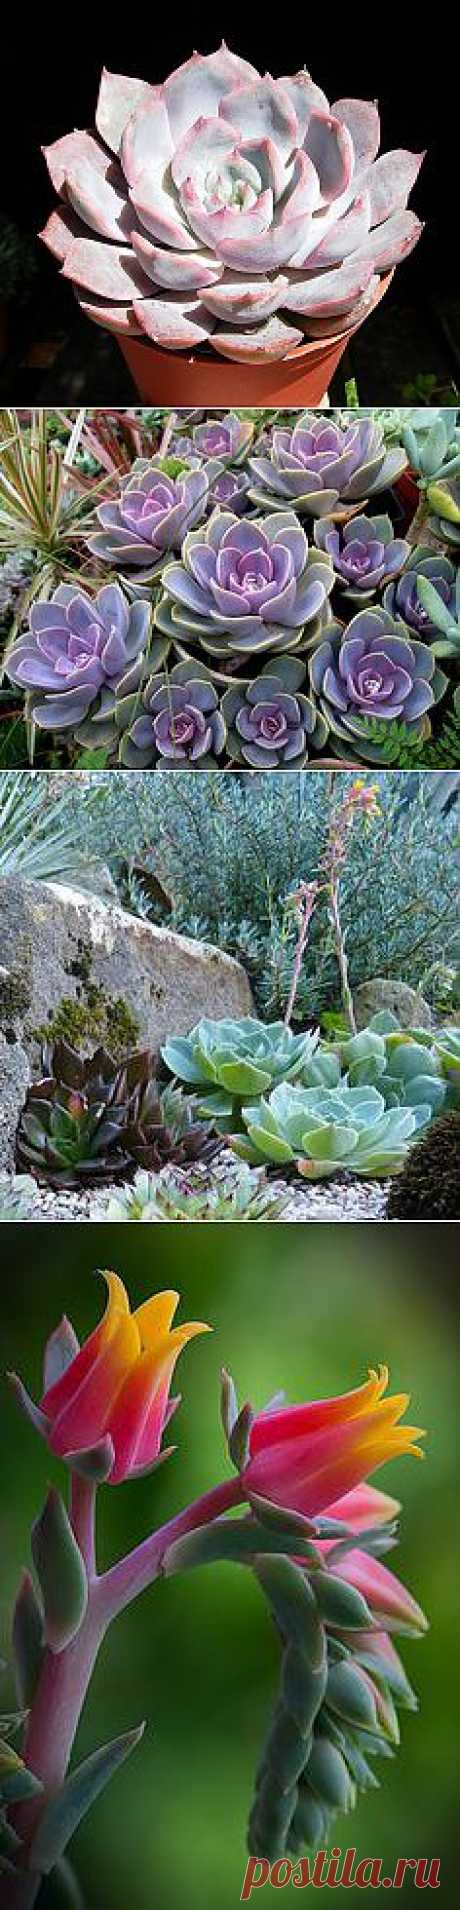 Echeveria Lidia by Manue64, via Flickr | Succulents